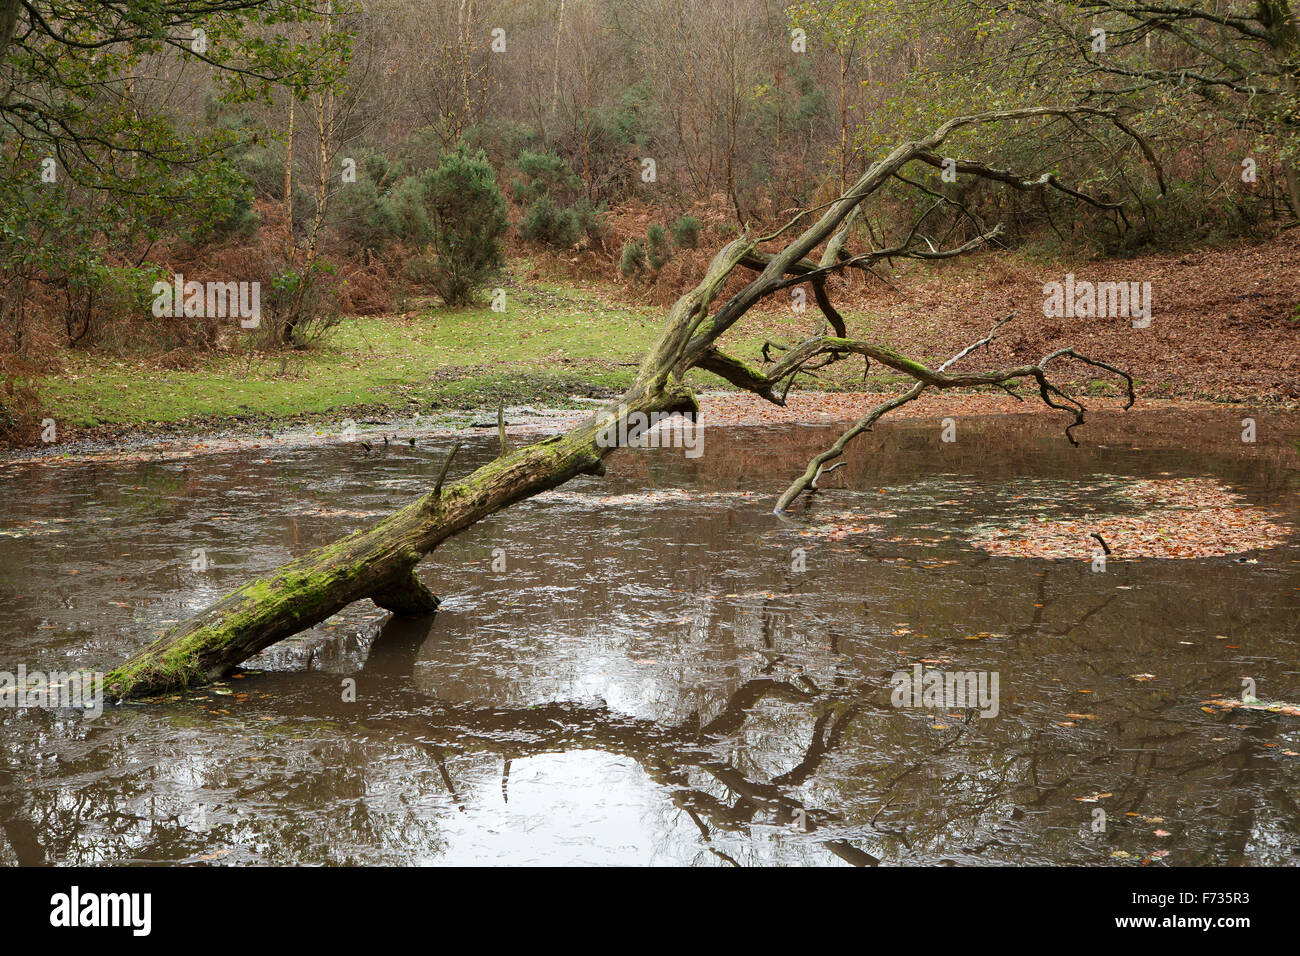 Tronco di albero nel lago. Albero caduto guardando come un braccio con una griffa passando da un gelido cercando stagno nei boschi. Foto Stock